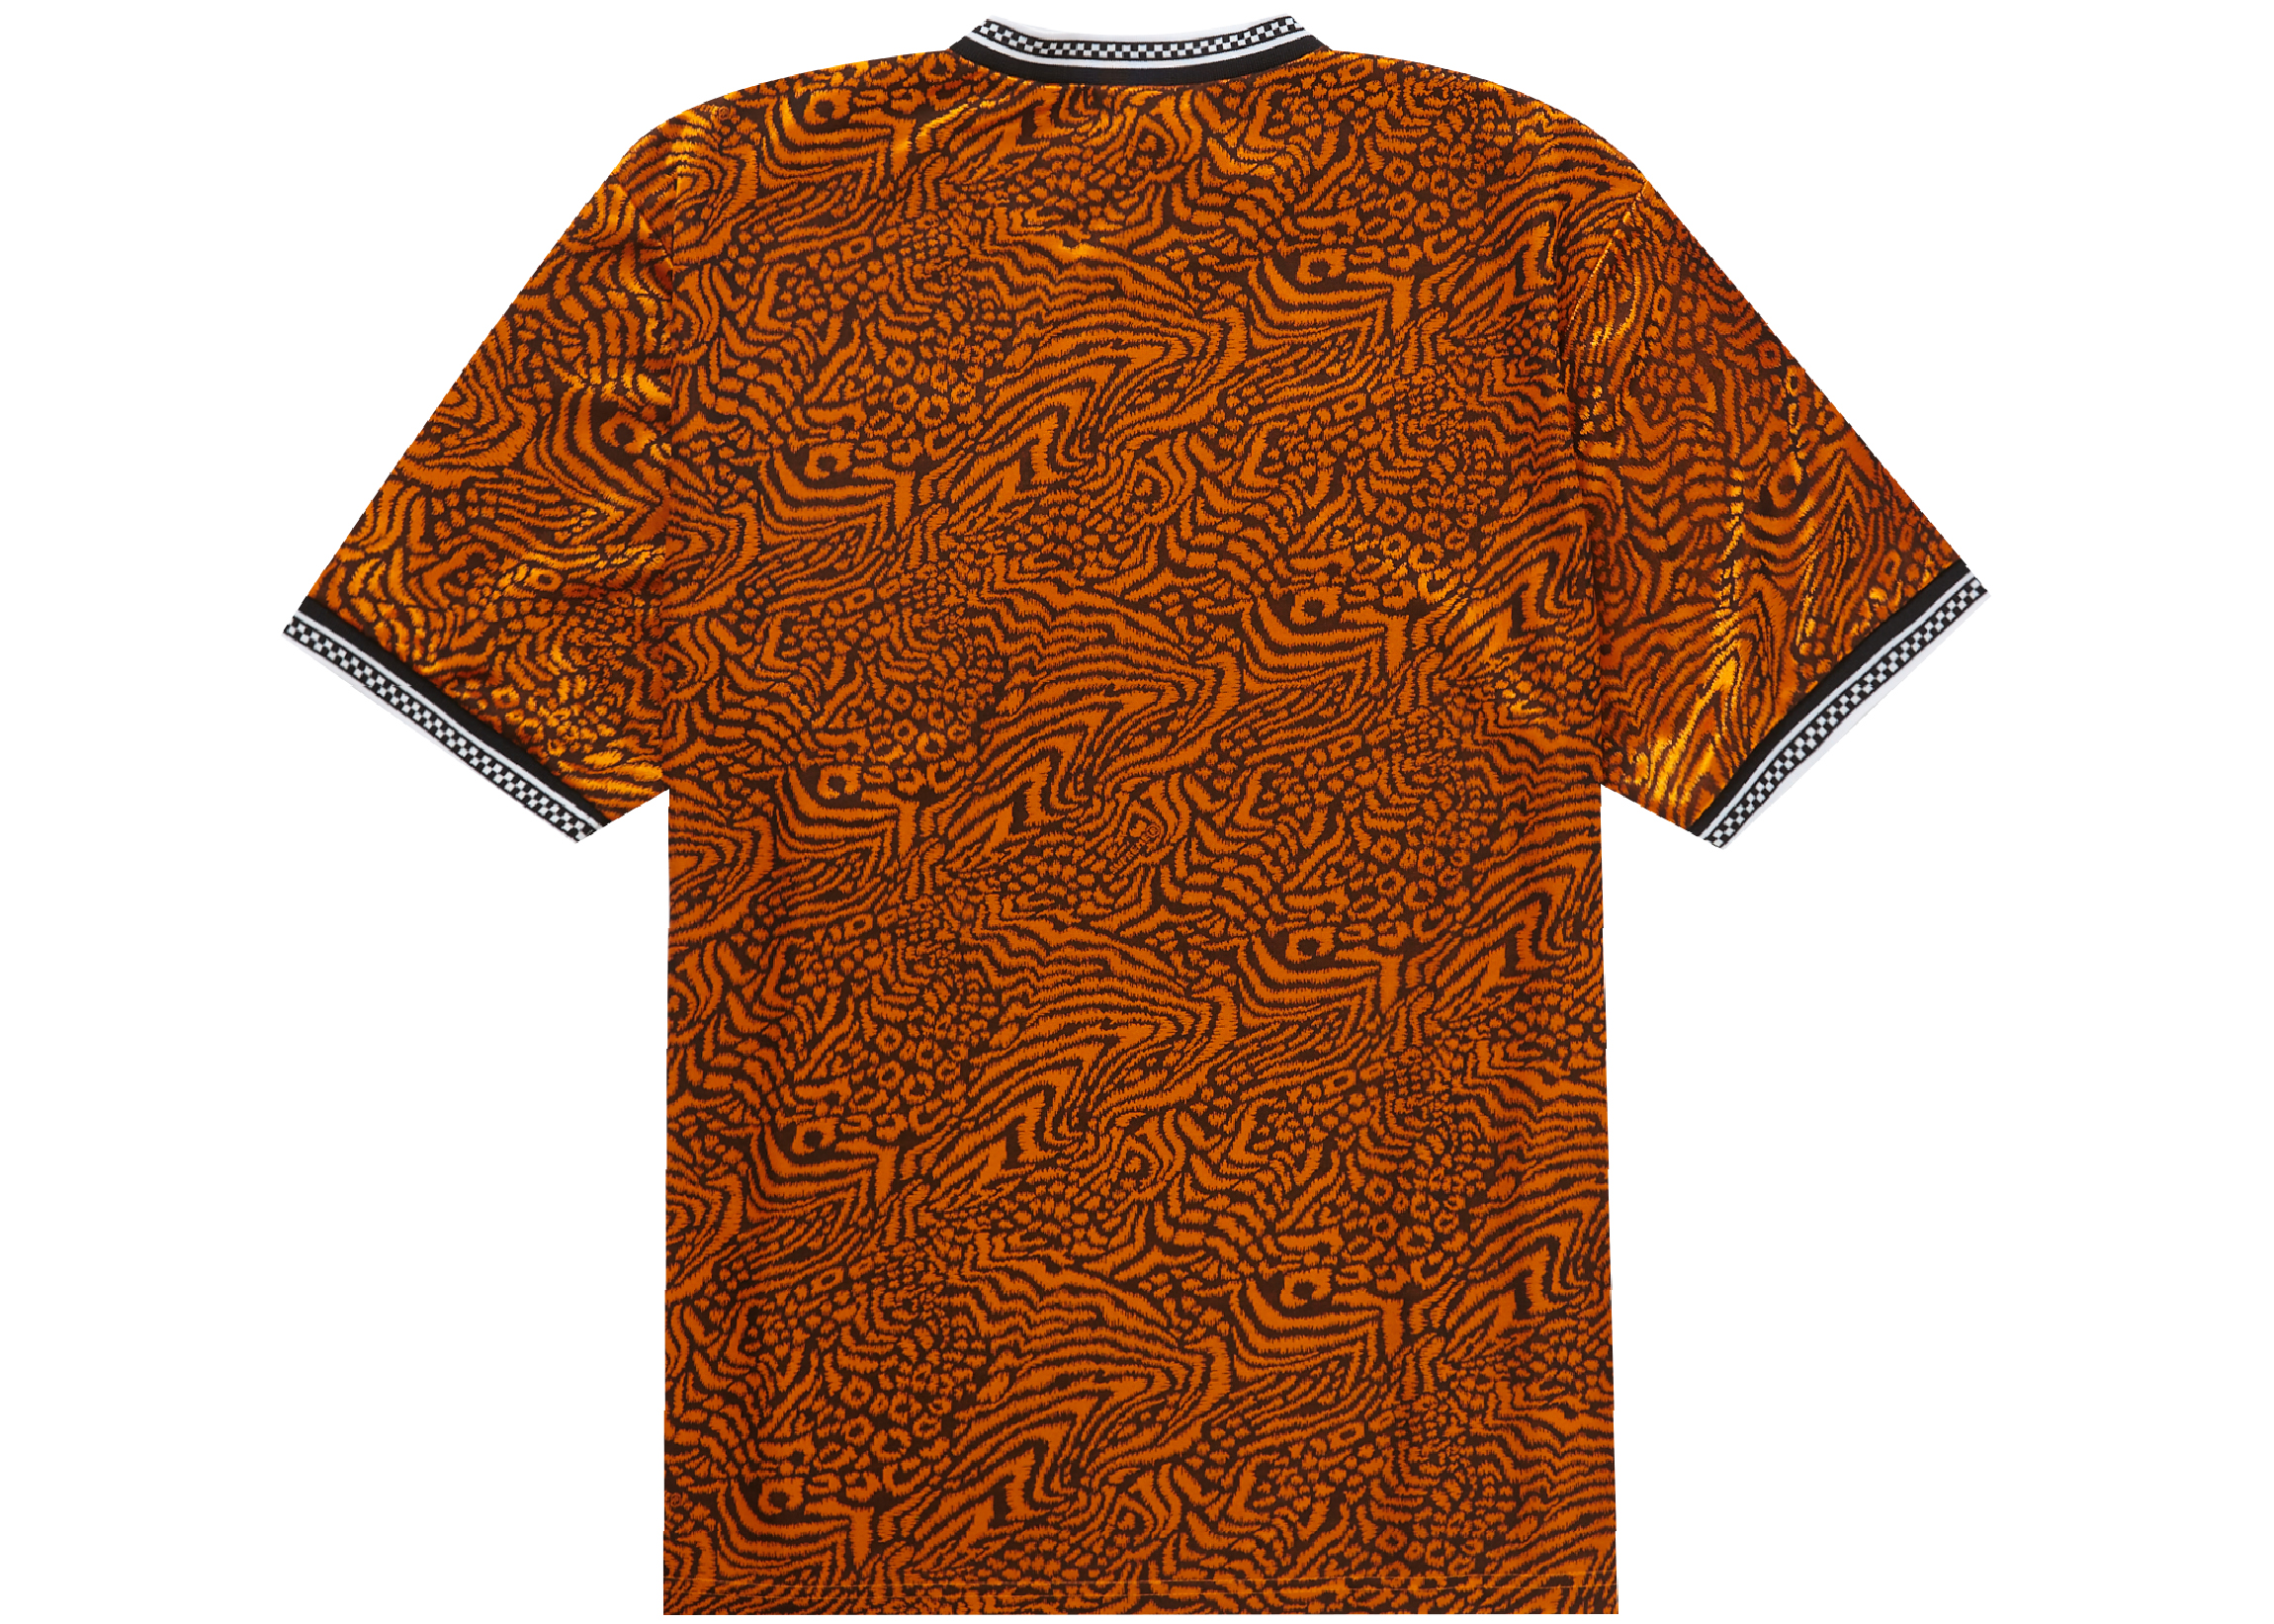 Supreme Umbro Jacquard Animal Print Soccer Jersey Orange Men's ...